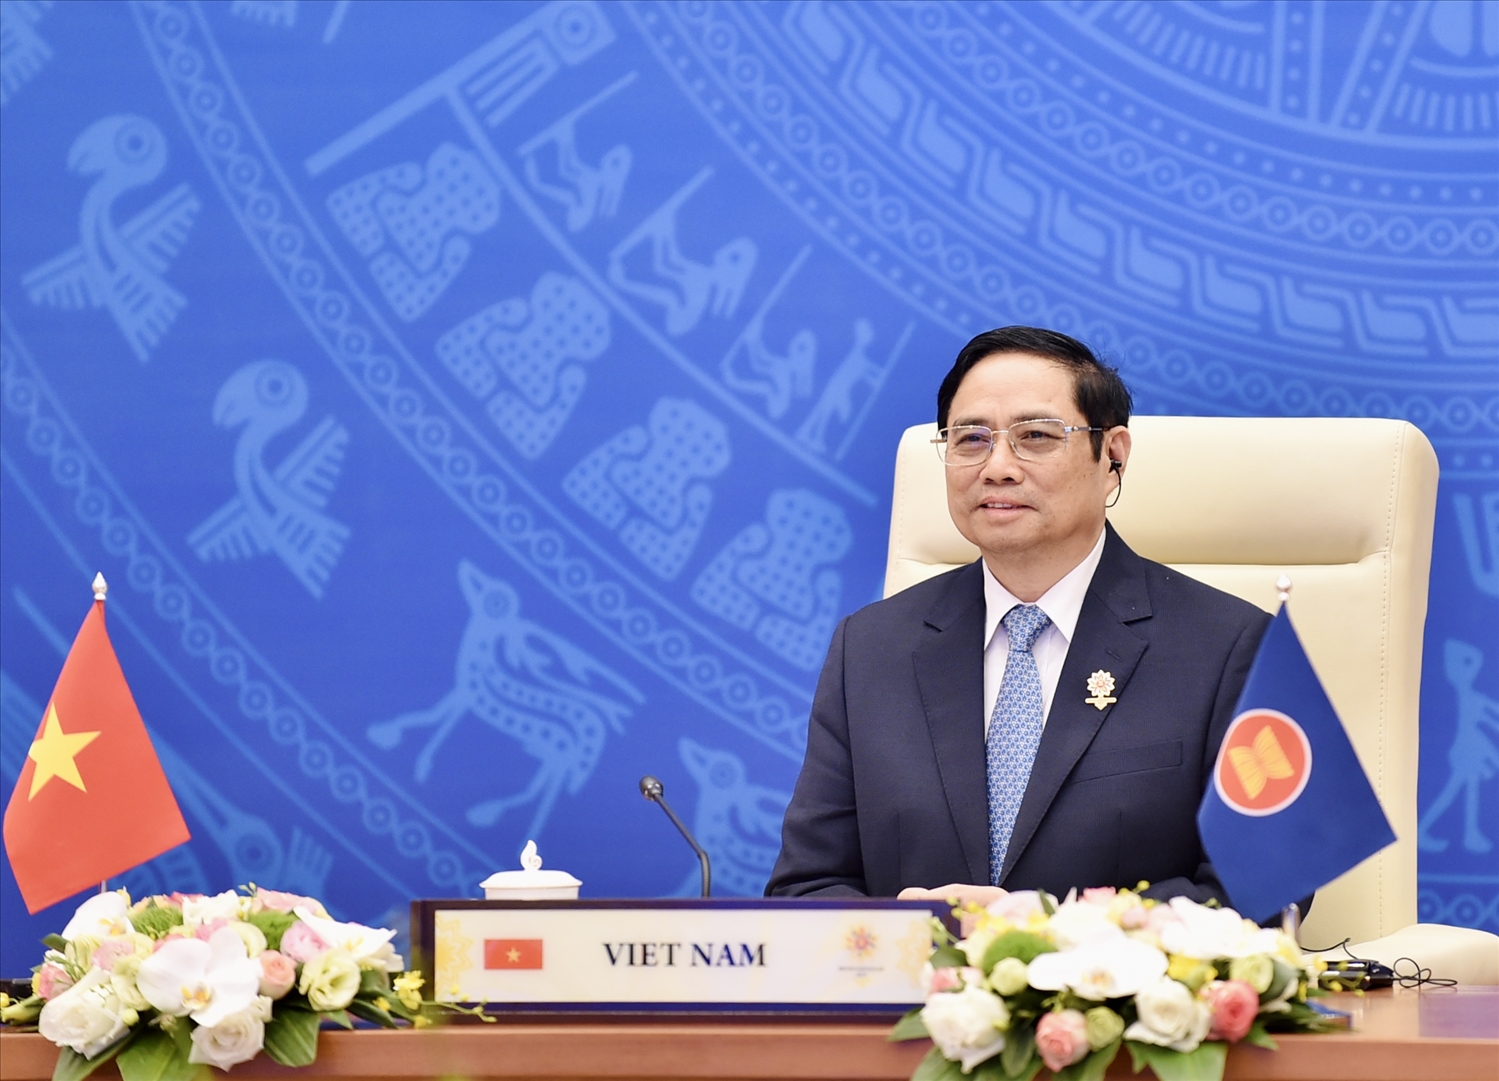 Thủ tướng Chính phủ Phạm Minh Chính hoan nghênh Hội nghị Cấp cao ASEAN - Australia thường niên lần đầu tiên, đánh dấu một chương hợp tác mới, có ý nghĩa lịch sử. Ảnh: VGp/Nhật Bắc